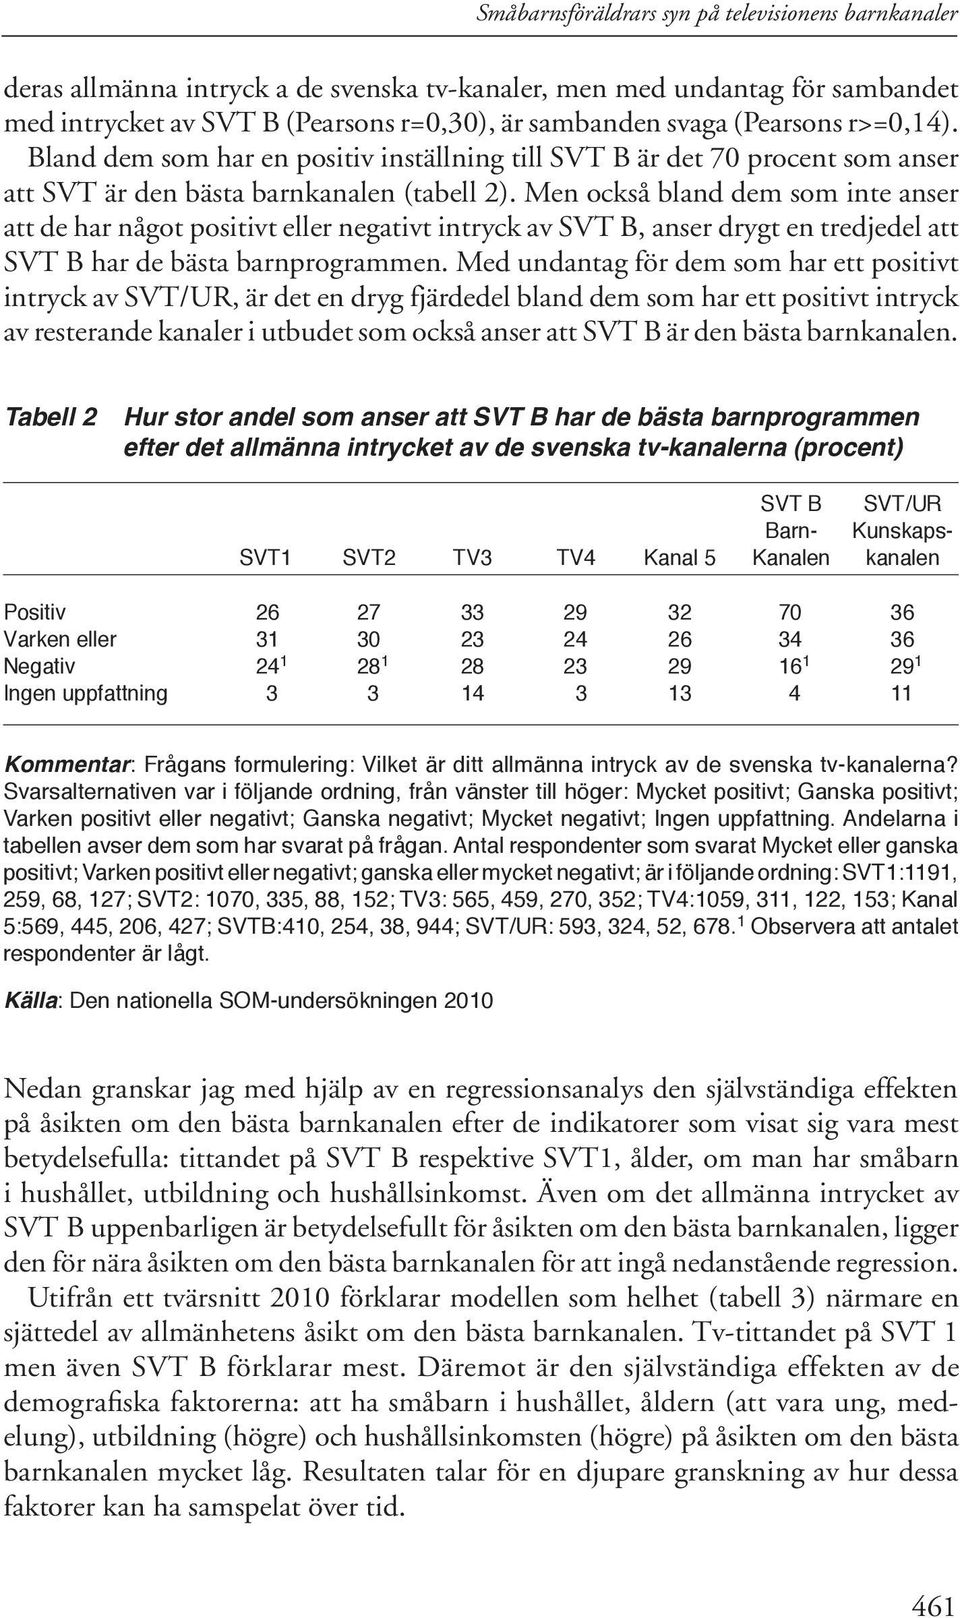 Men också bland dem som inte anser att de har något positivt eller negativt intryck av SVT B, anser drygt en tredjedel att SVT B har de bästa barnprogrammen.